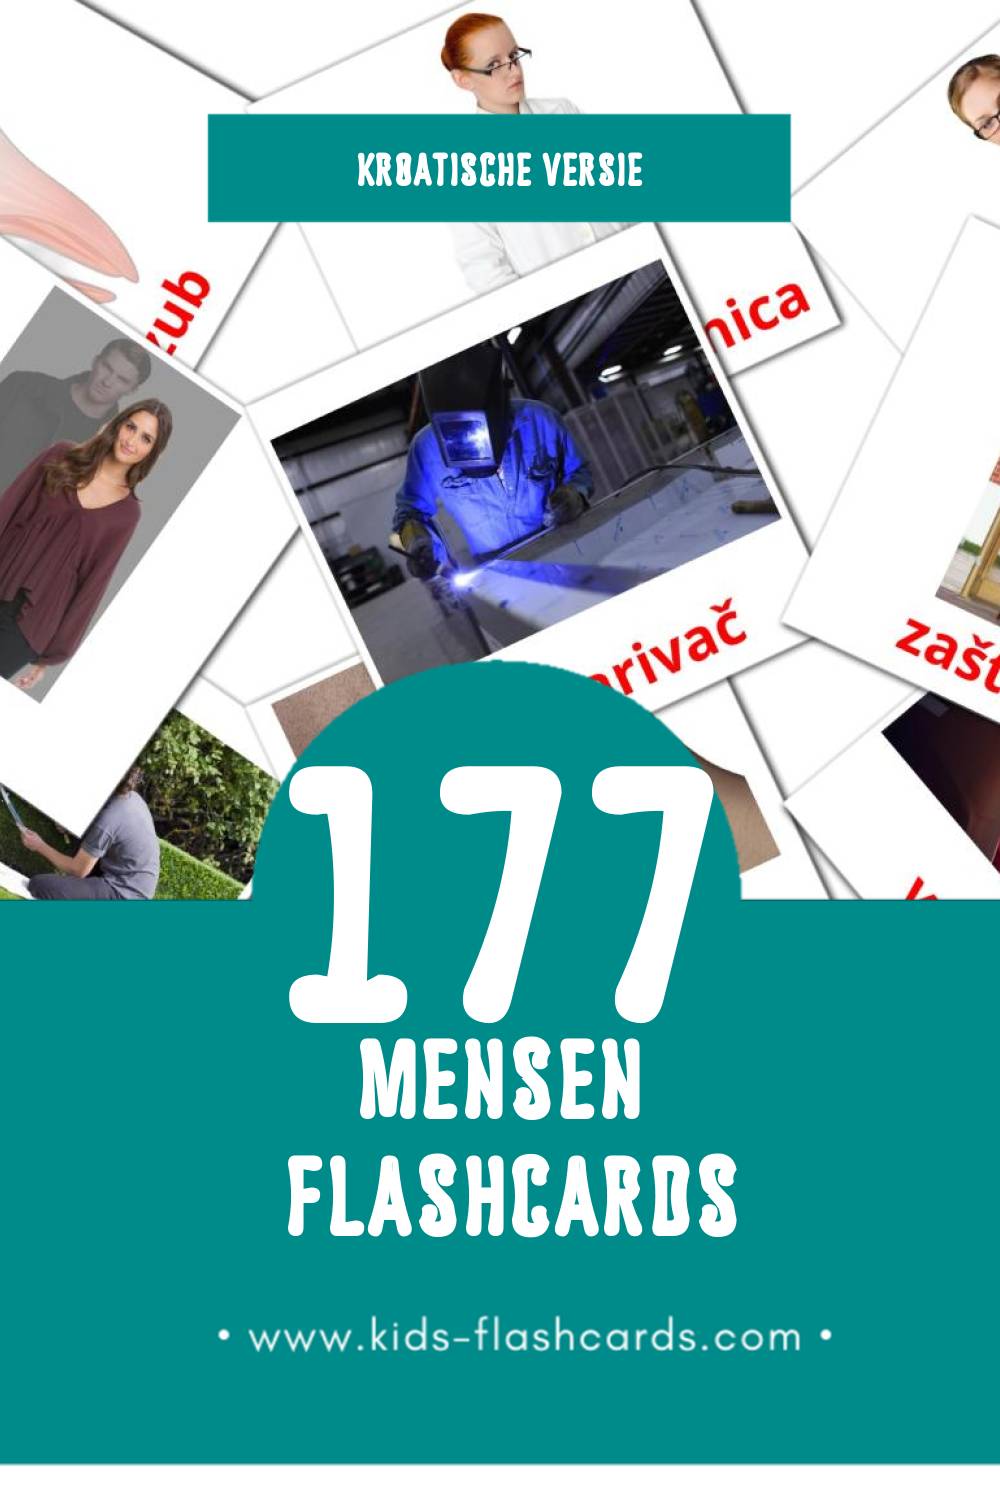 Visuele LJUDI Flashcards voor Kleuters (177 kaarten in het Kroatisch)